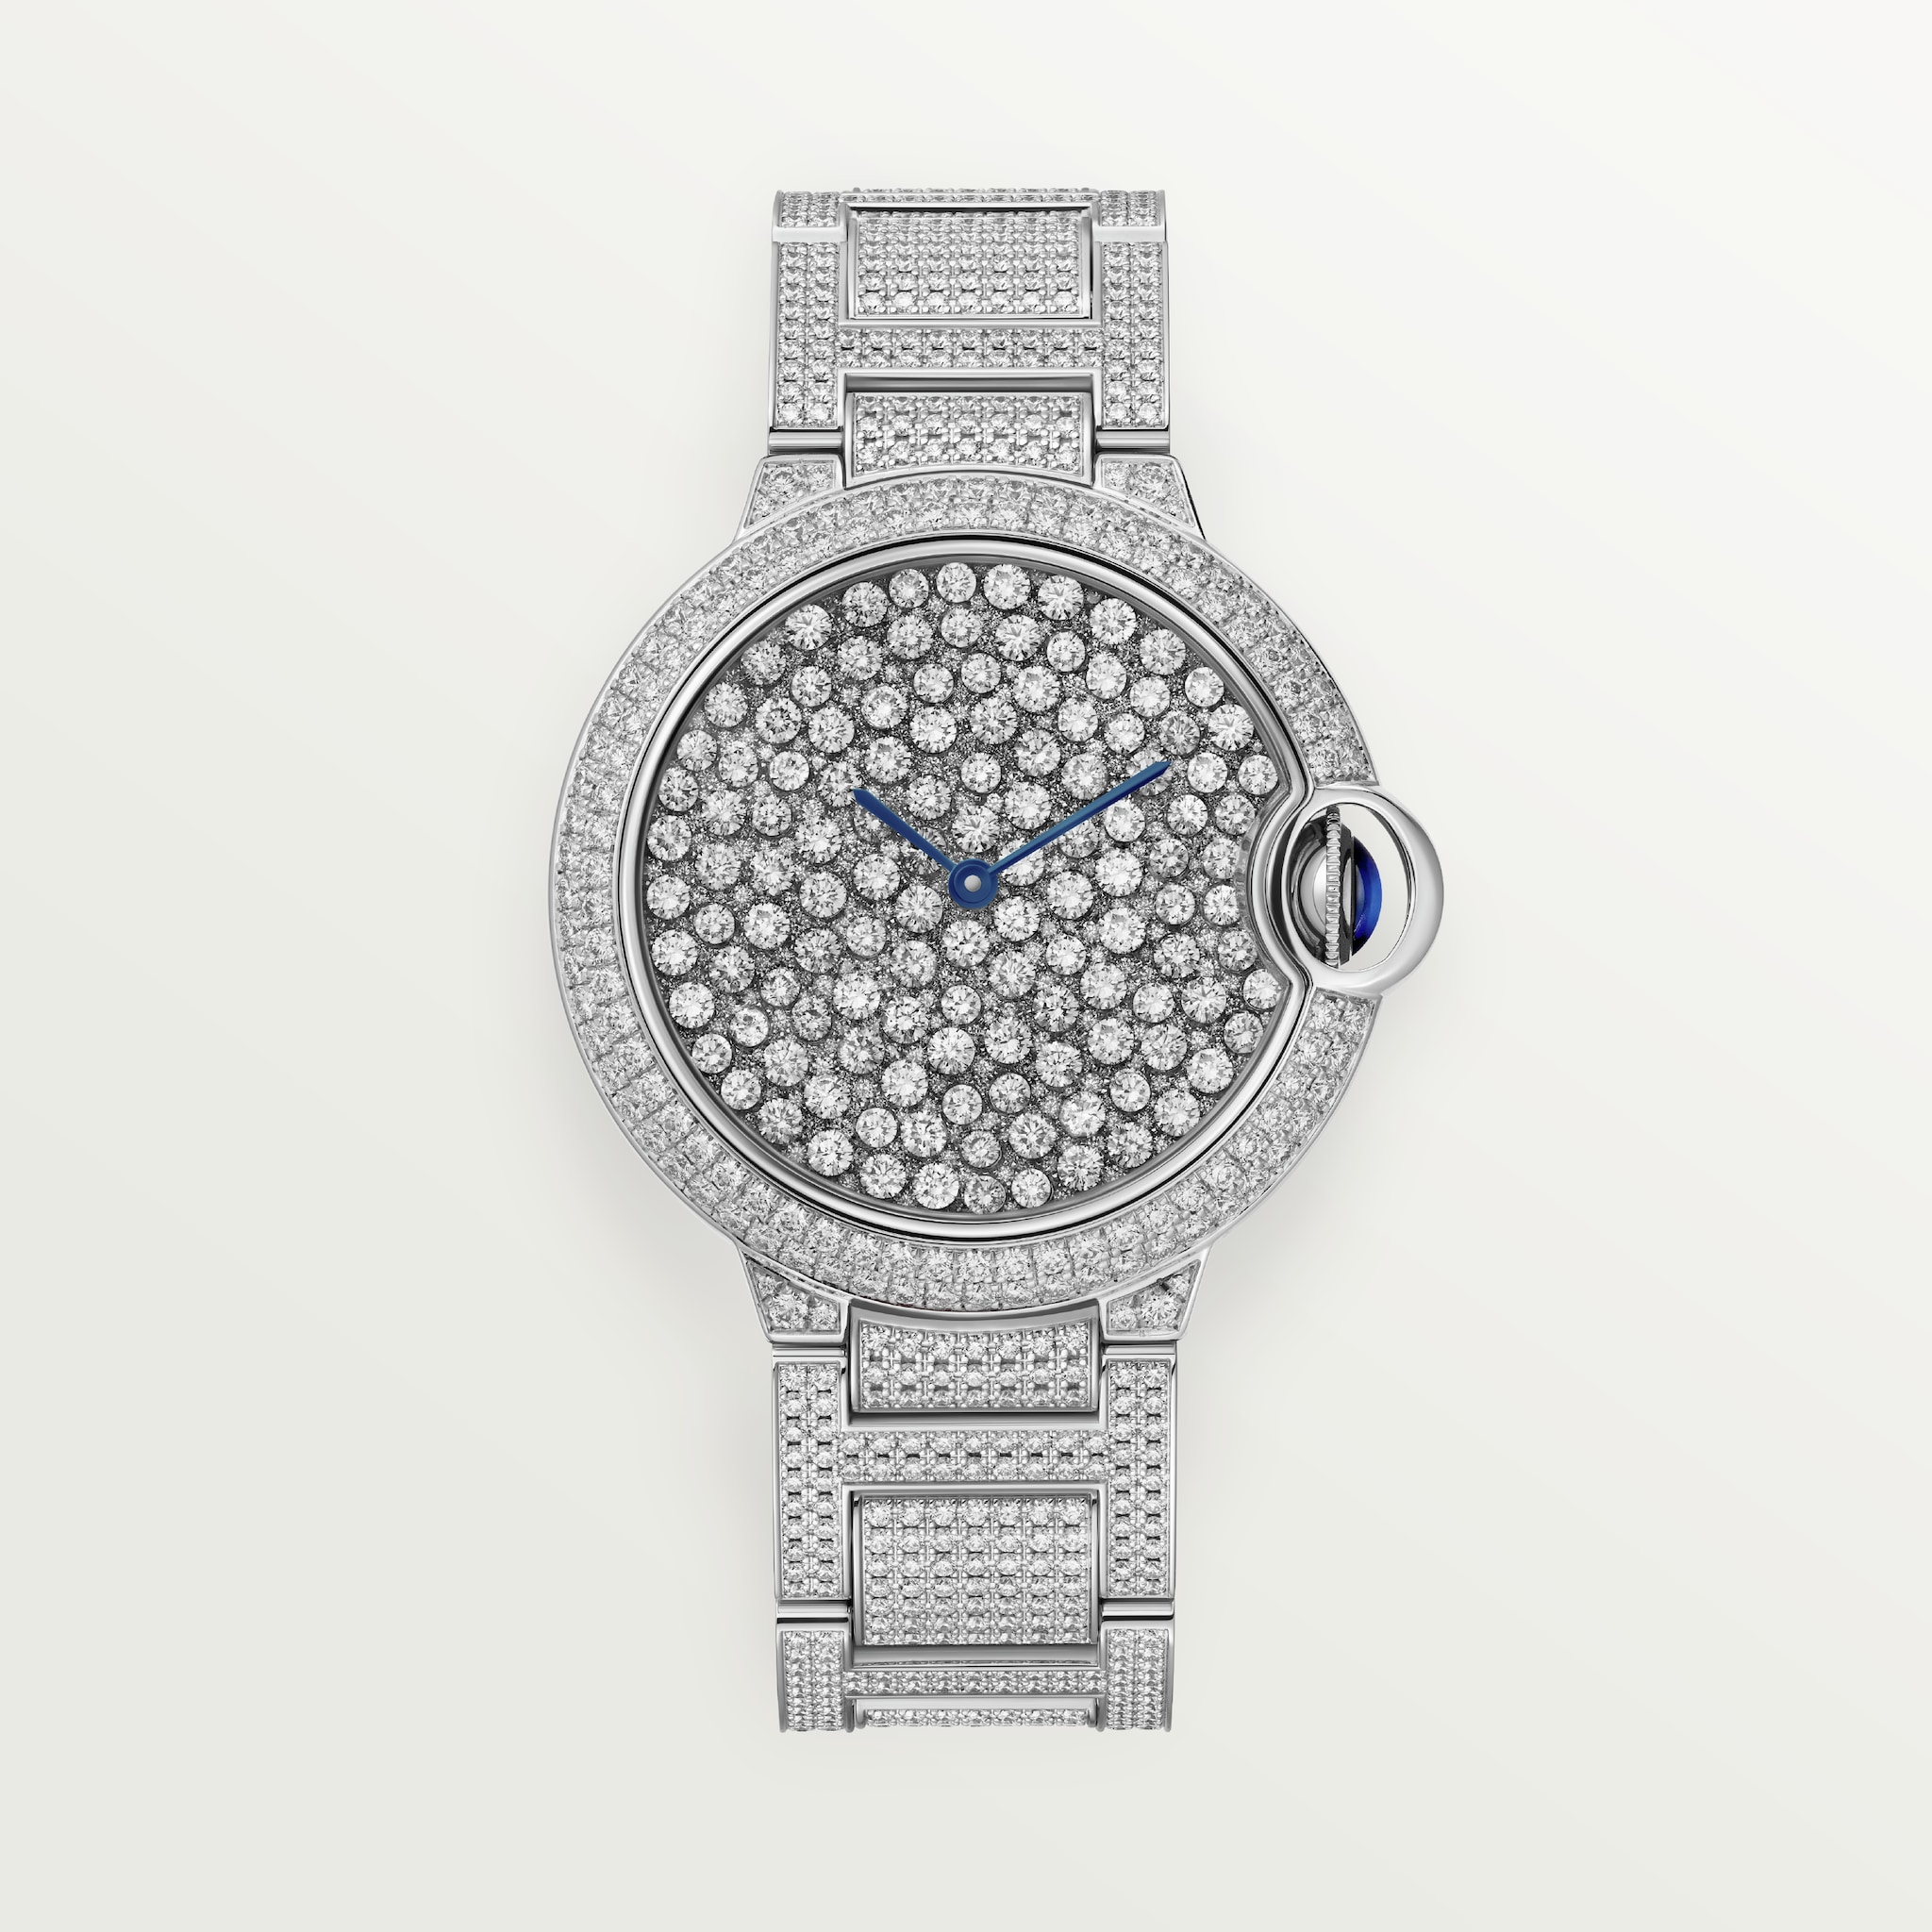 Reloj Ballon Bleu de Cartier37 mm, movimiento mecánico automático, oro blanco, diamantes, brazalete de metal